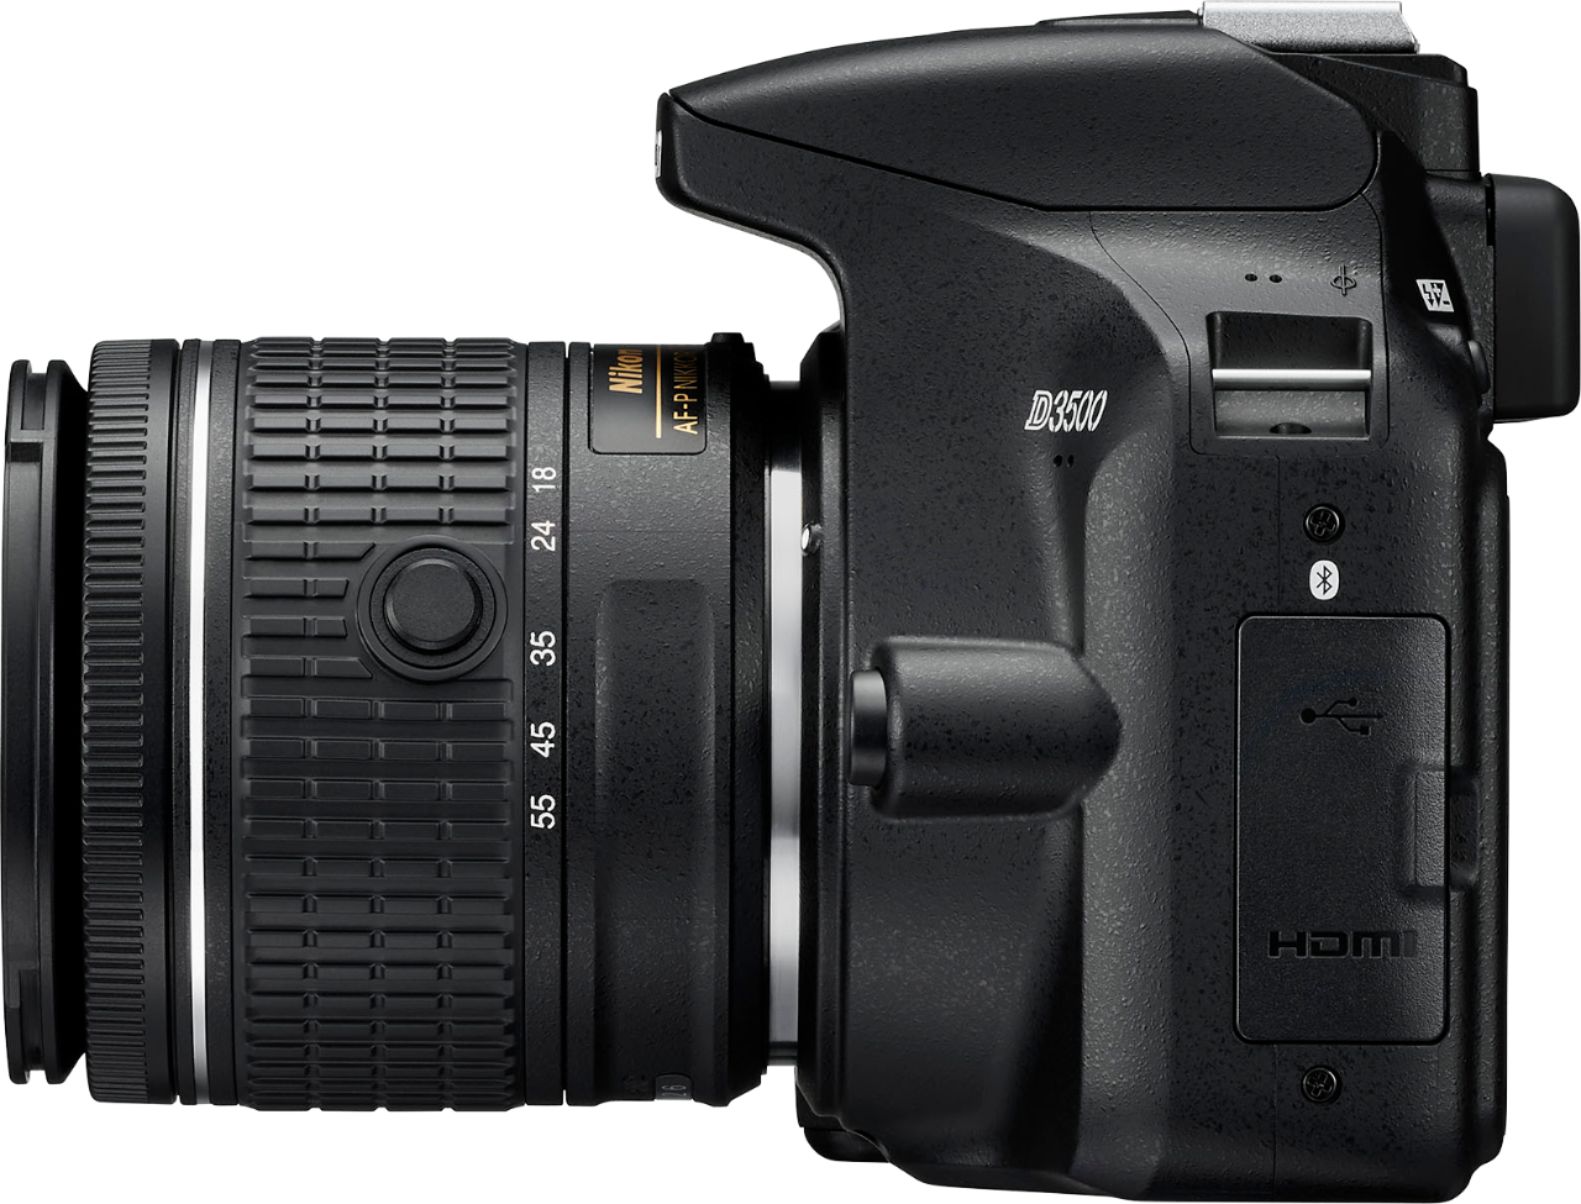 Best Buy: Nikon D3500 DSLR Video Camera with AF-P DX NIKKOR 18-55mm  f/3.5-5.6G VR Lens Black 1590